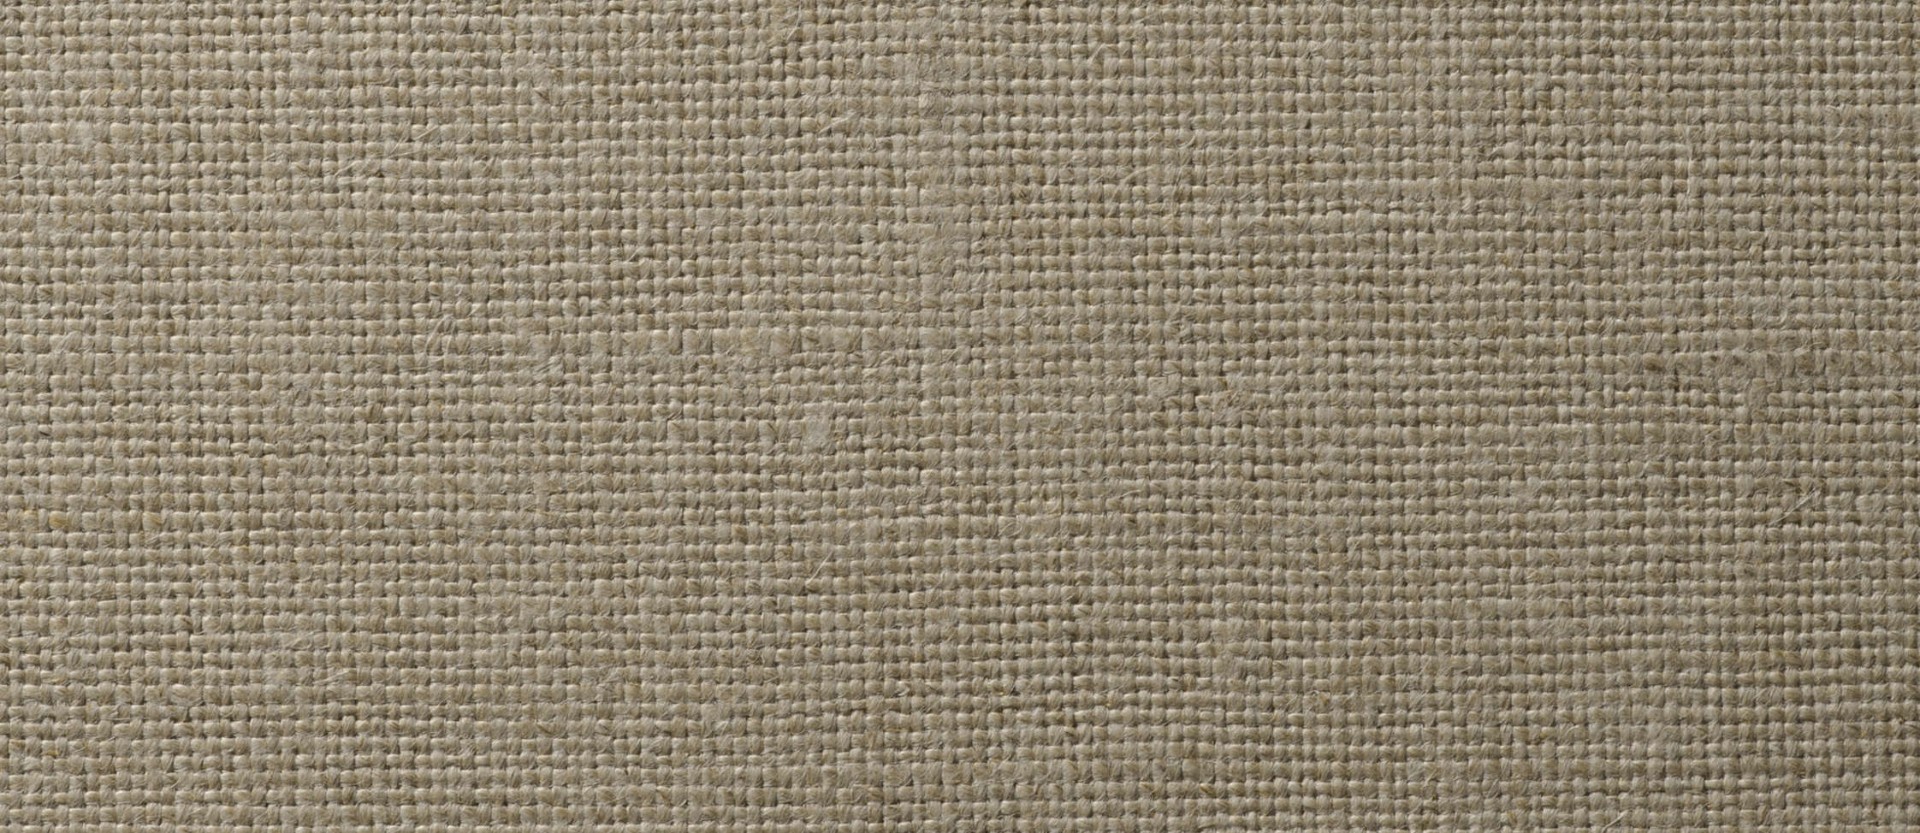 Текстильные обои Vescom Golden flax 2610.74